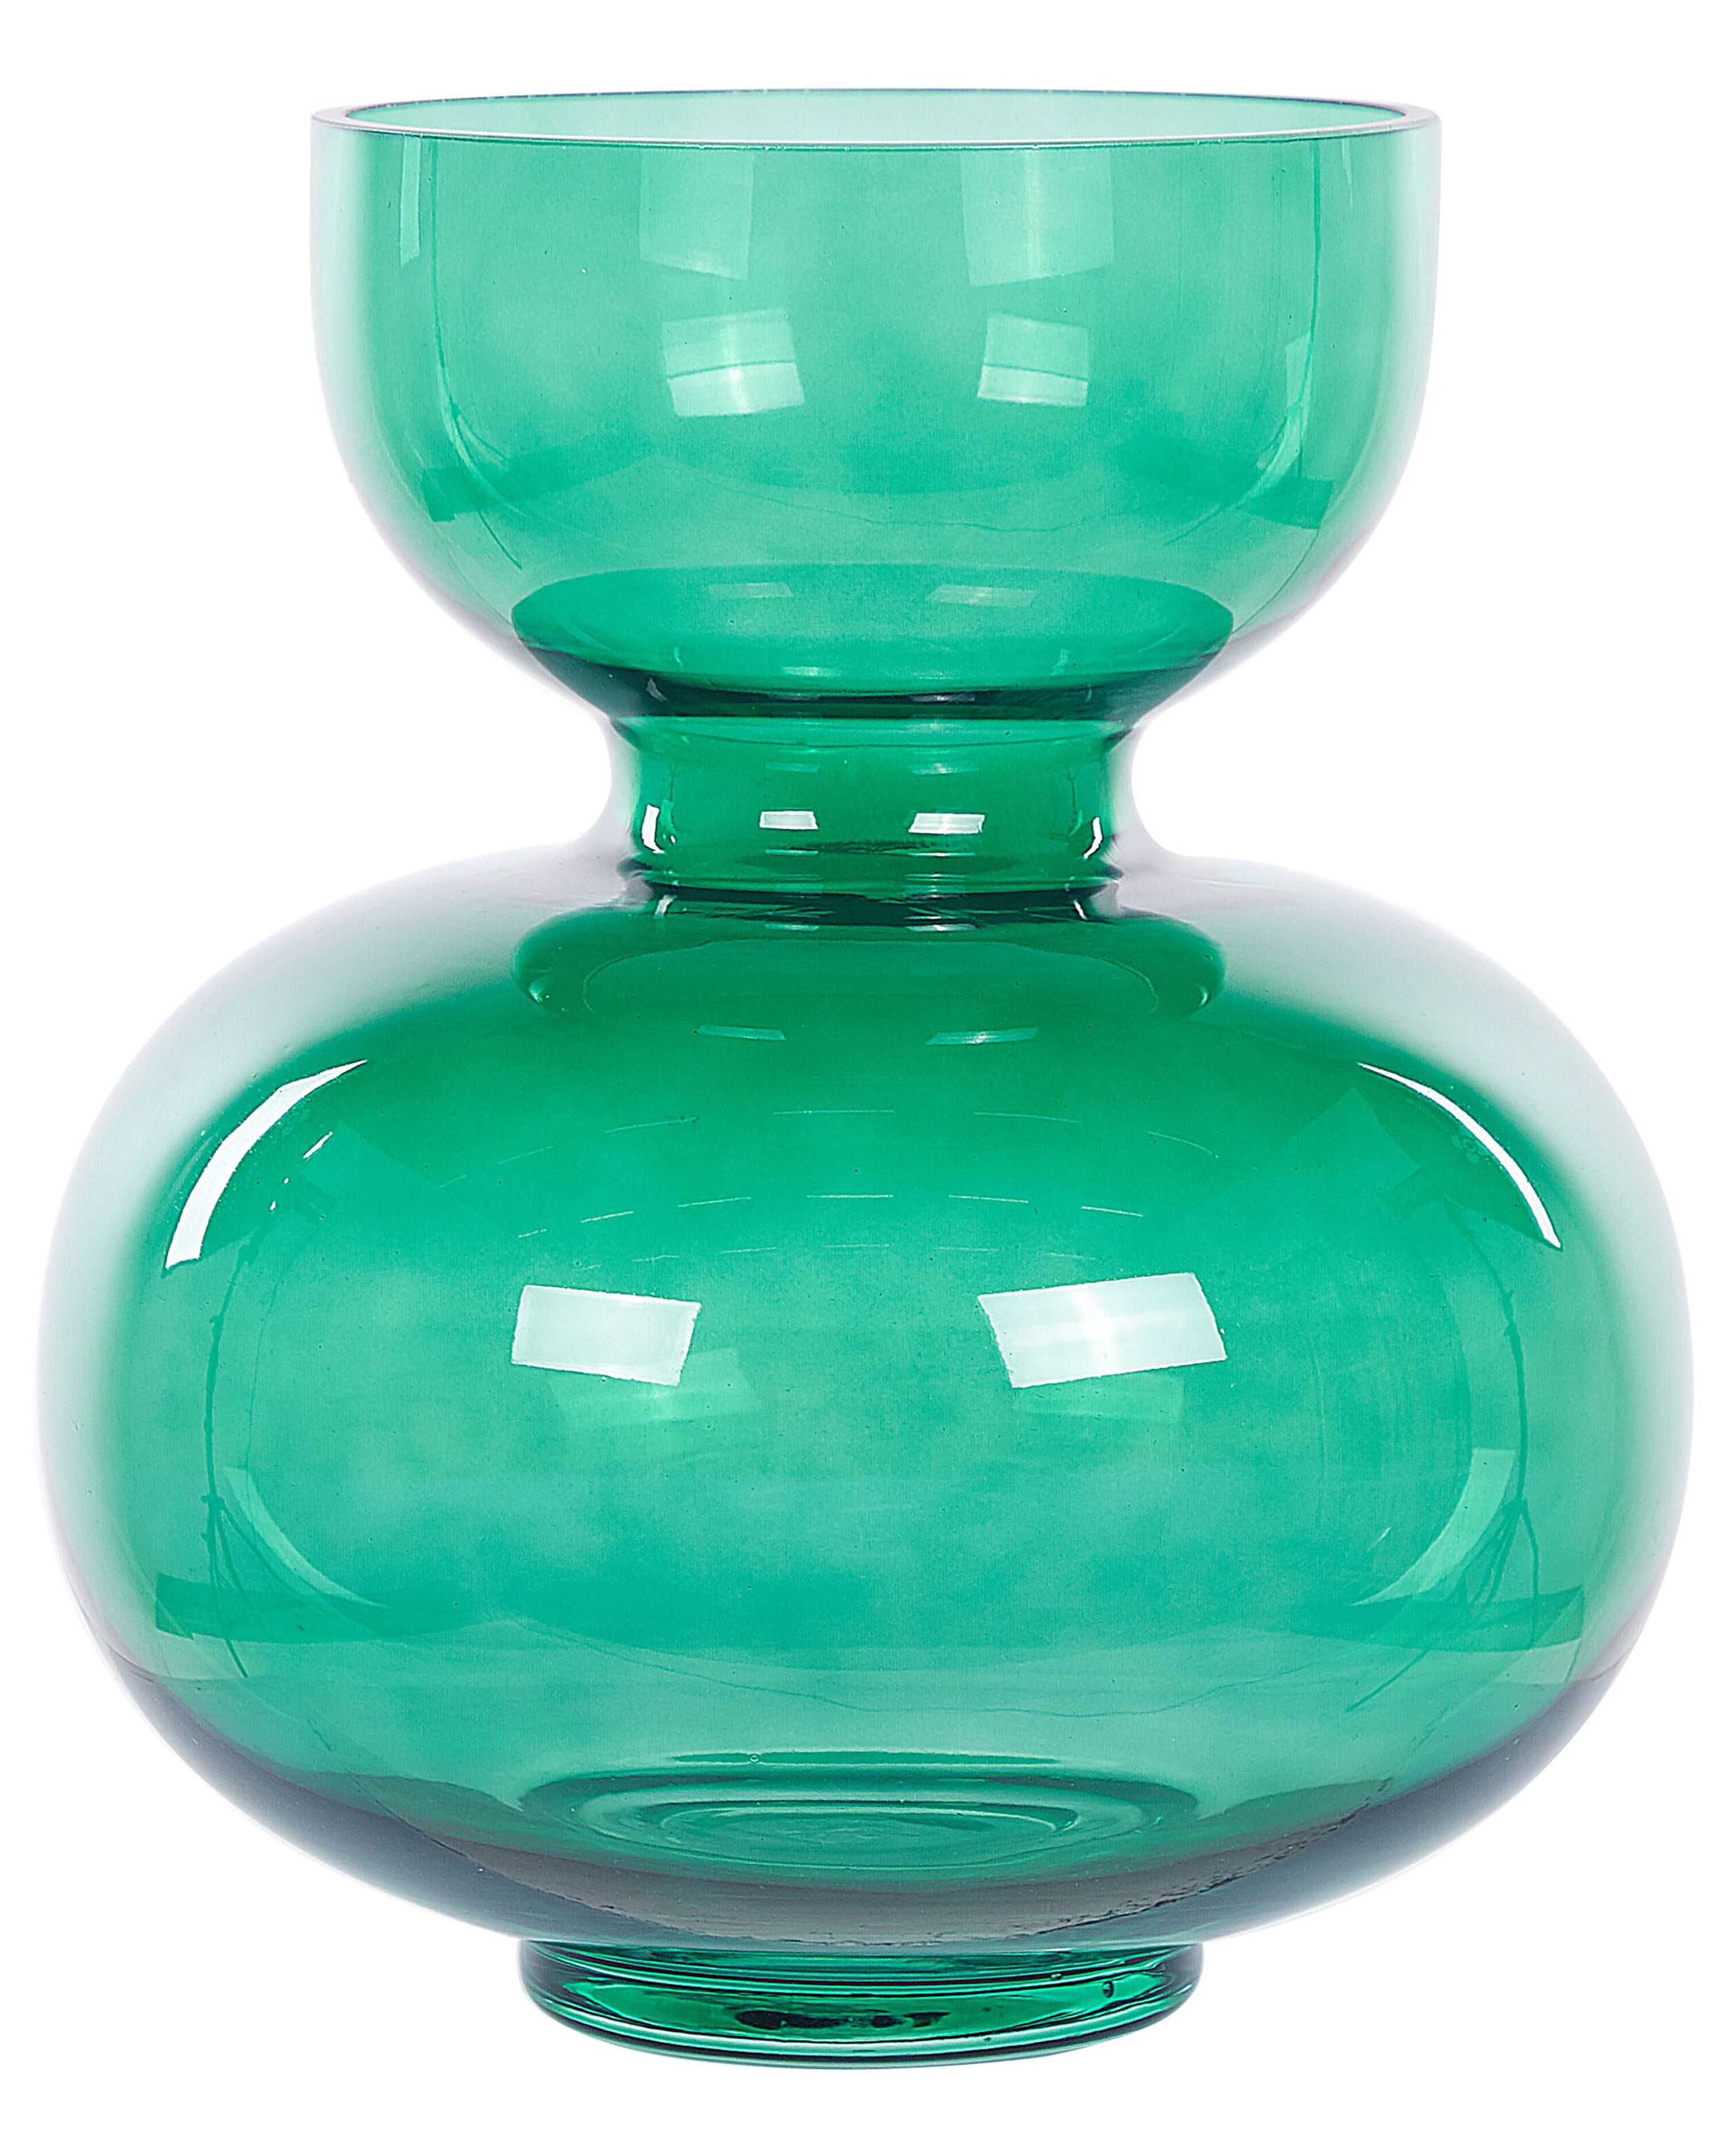 Vaso in vetro verde chiaro con texture a scaglie